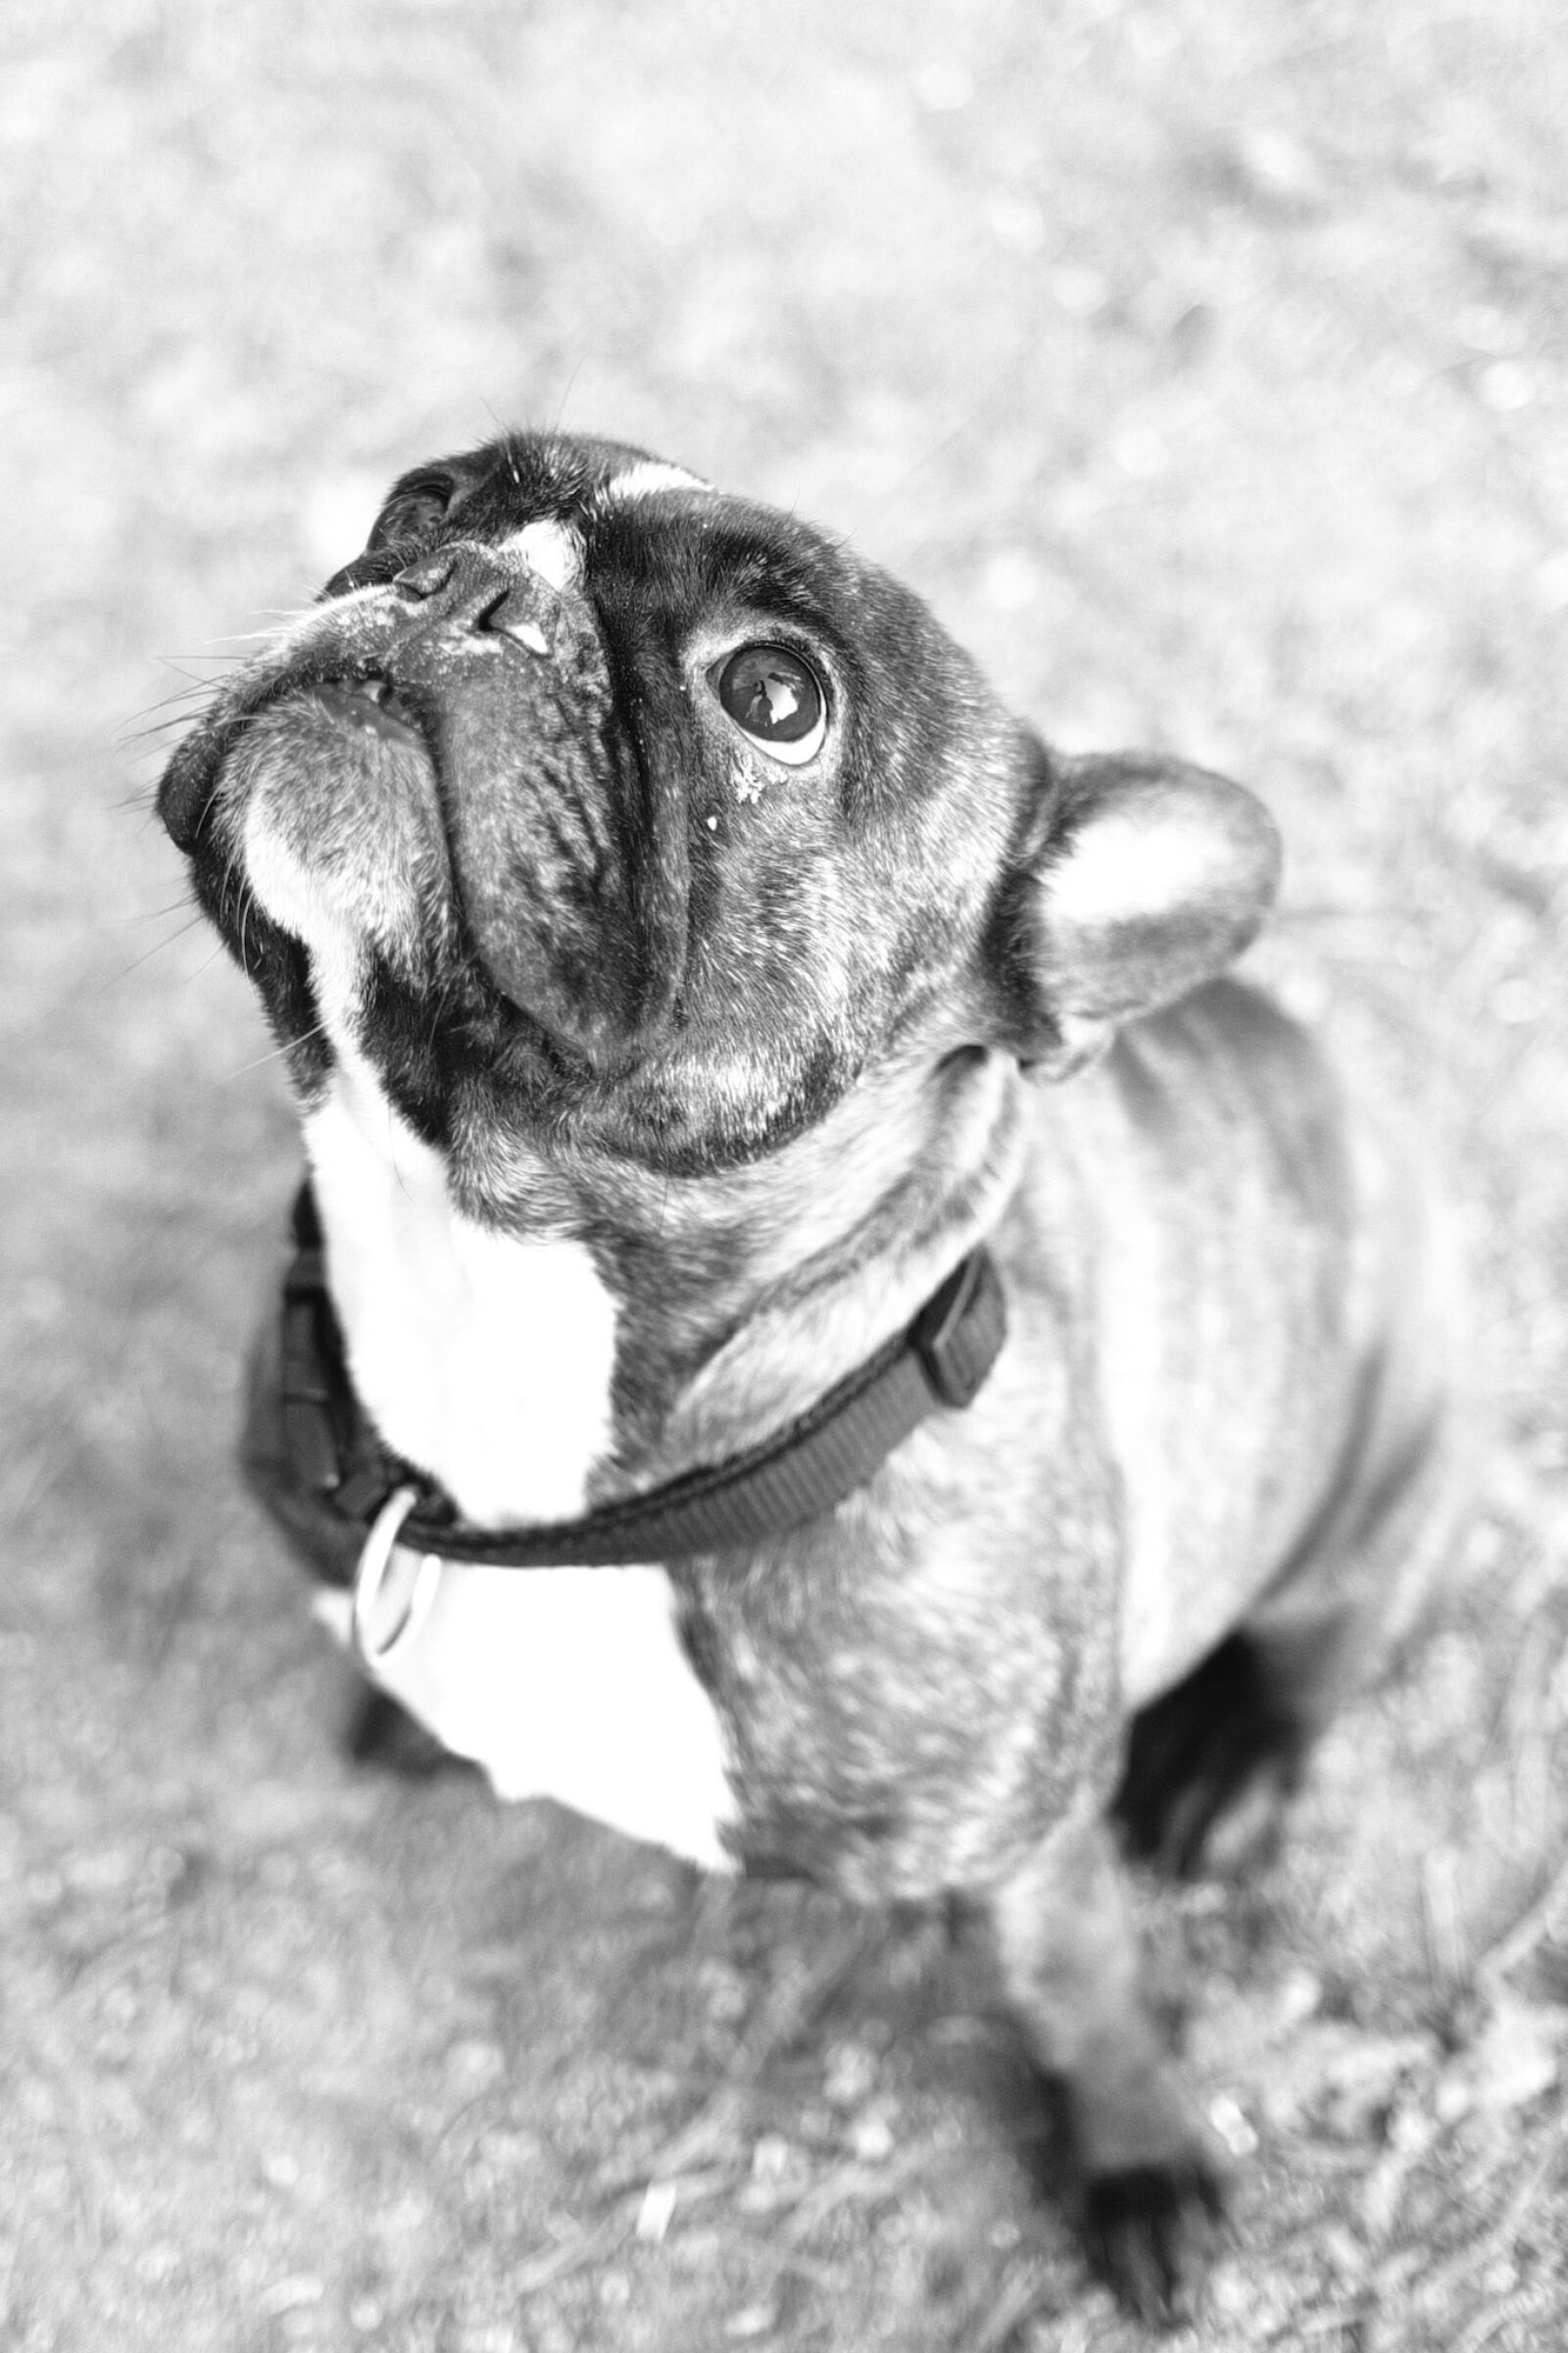 Fujifilm XF 23mm F1.4 R sample photo. Bulldog, dog, animal photography